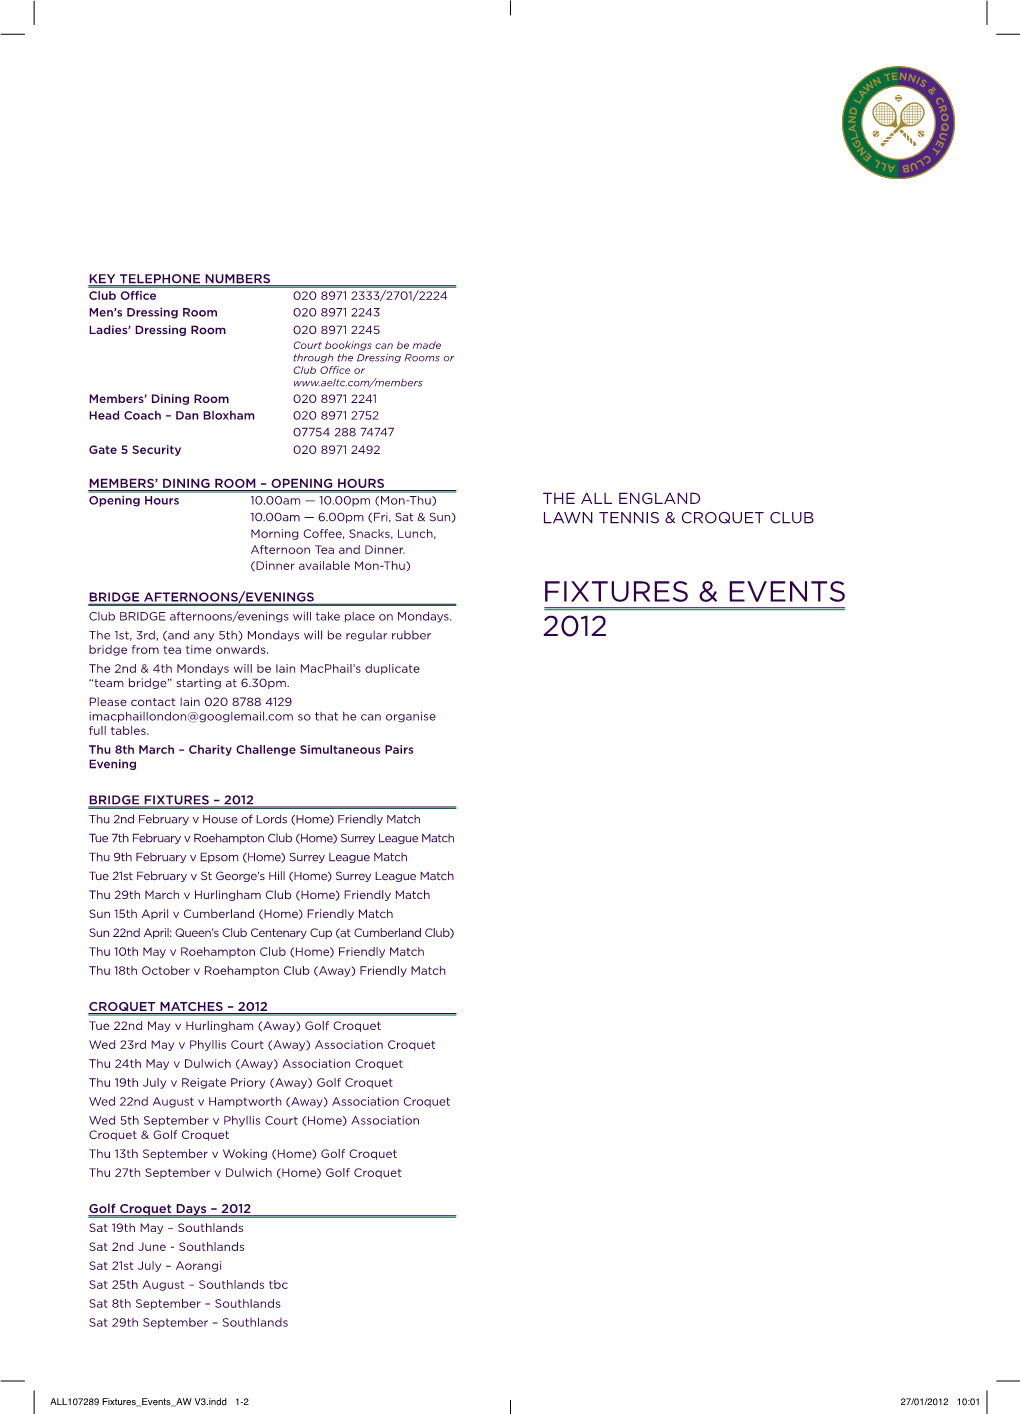 Fixtures & Events 2012